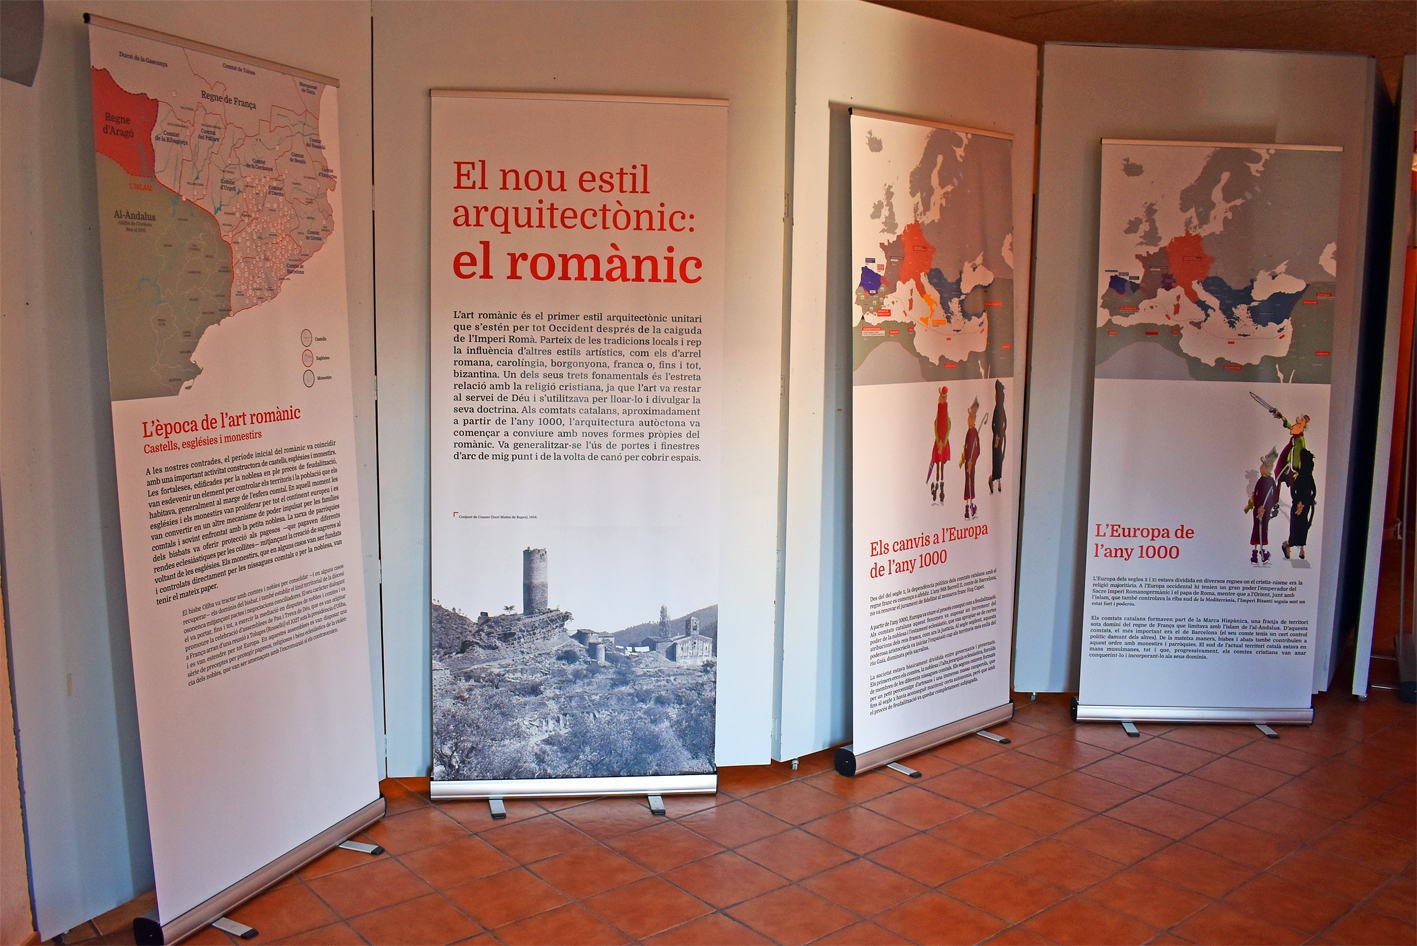 Plafons de lâ€™exposiciÃ³ 'El romÃ nic del temps dâ€™Oliba. Castells, esglÃ©sies i monestirs restaurats per la DiputaciÃ³ de Barcelona' a Cal Balaguer del Porxo.